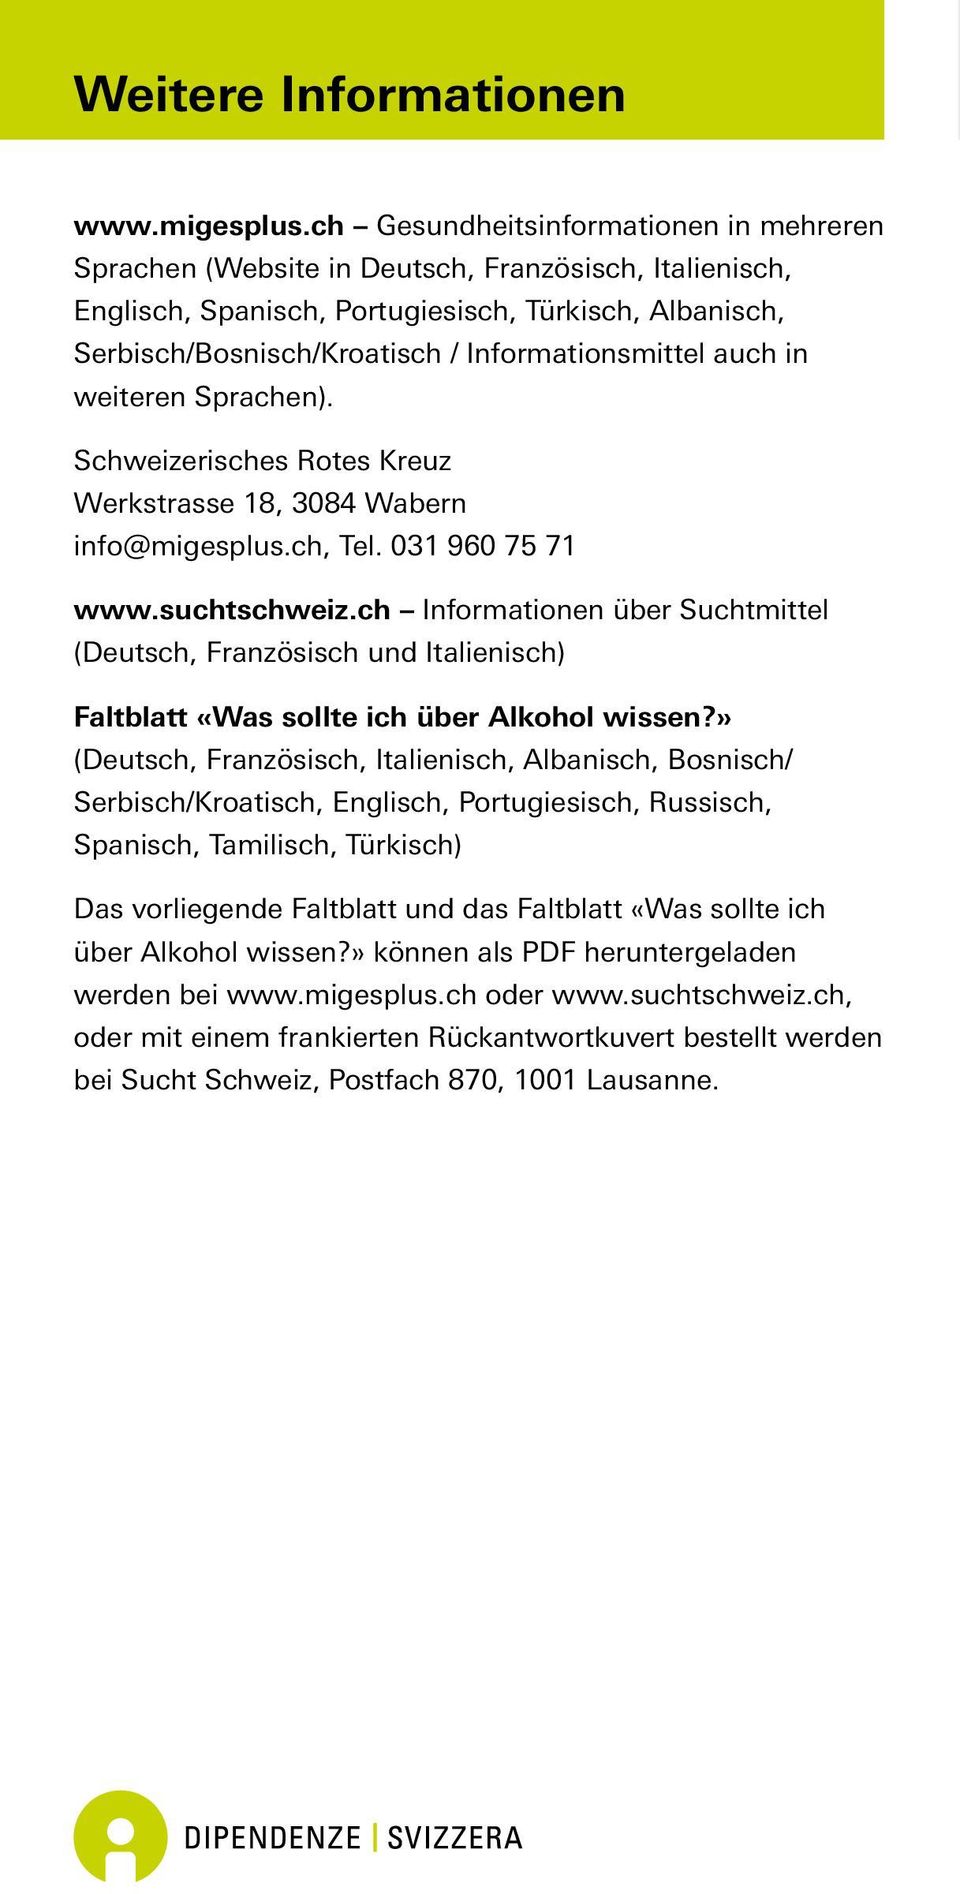 Informationsmittel auch in weiteren Sprachen). Schweizerisches Rotes Kreuz Werkstrasse 18, 3084 Wabern info@migesplus.ch, Tel. 031 960 75 71 www.suchtschweiz.